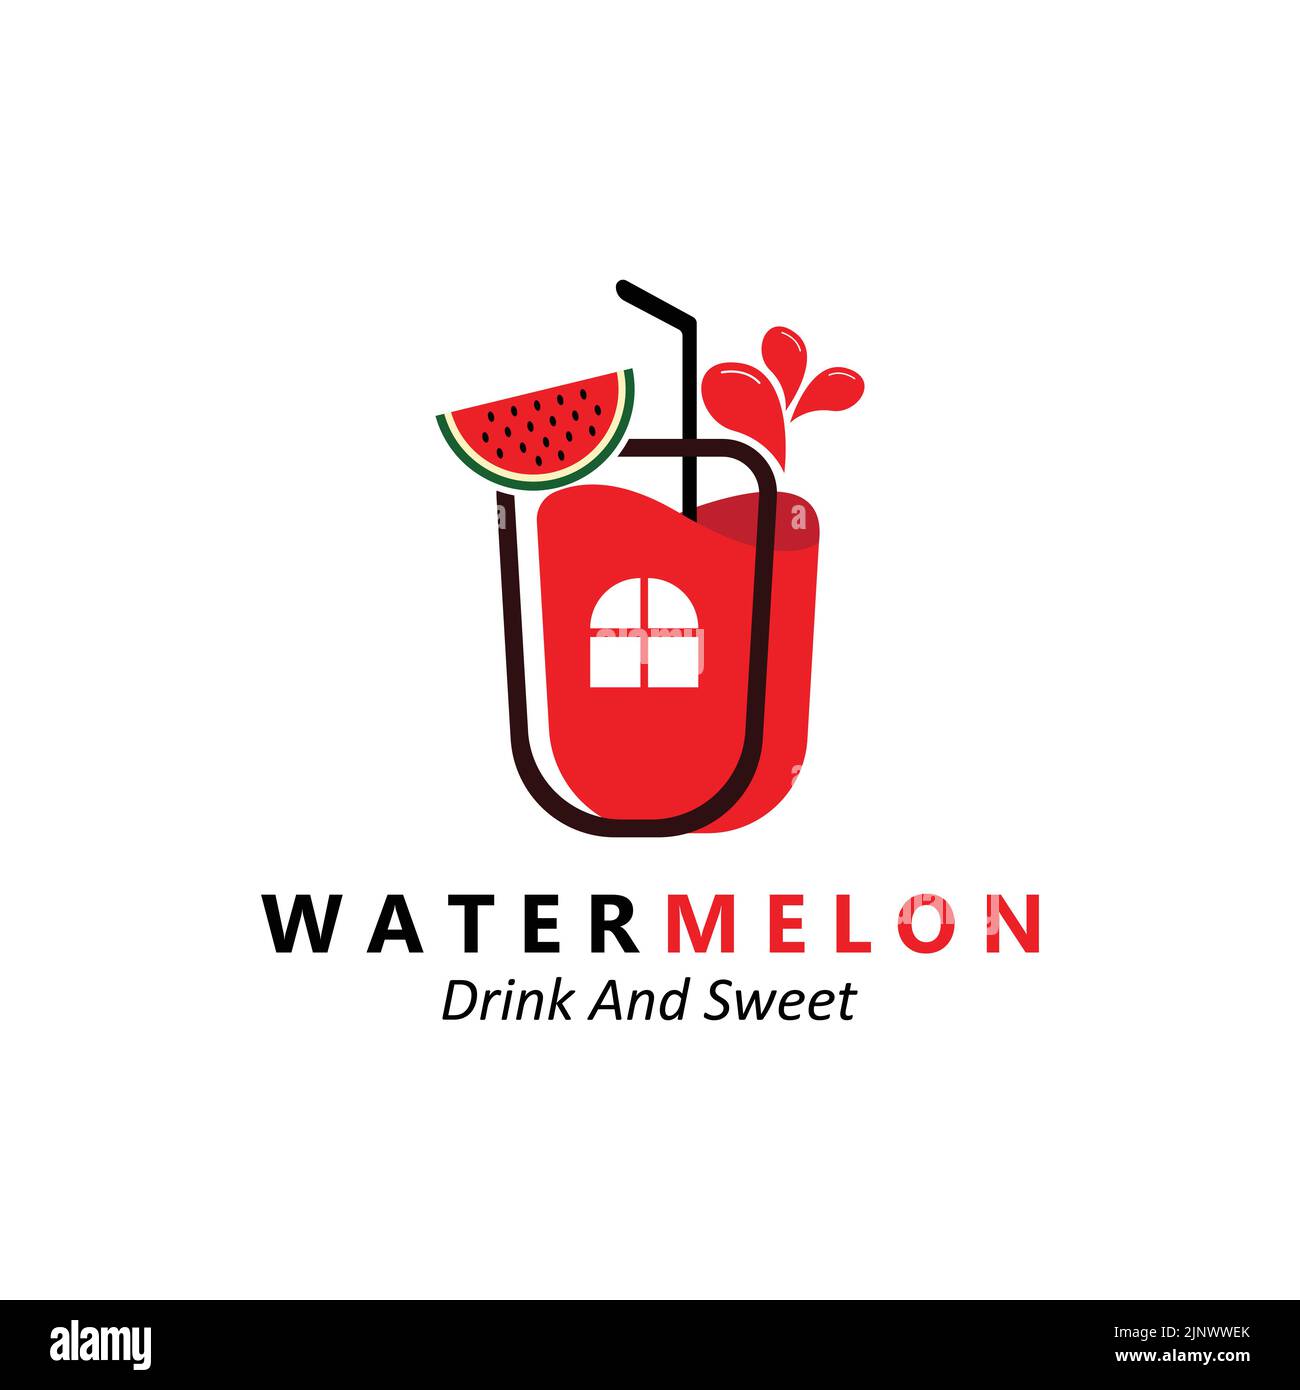 Vektor-Illustration Von Frischem Obst Wassermelone Obst Logo Rot, Erhältlich Auf Dem Markt, Siebdruck-Design, Aufkleber, Banner, Obst-Unternehmen Stock Vektor